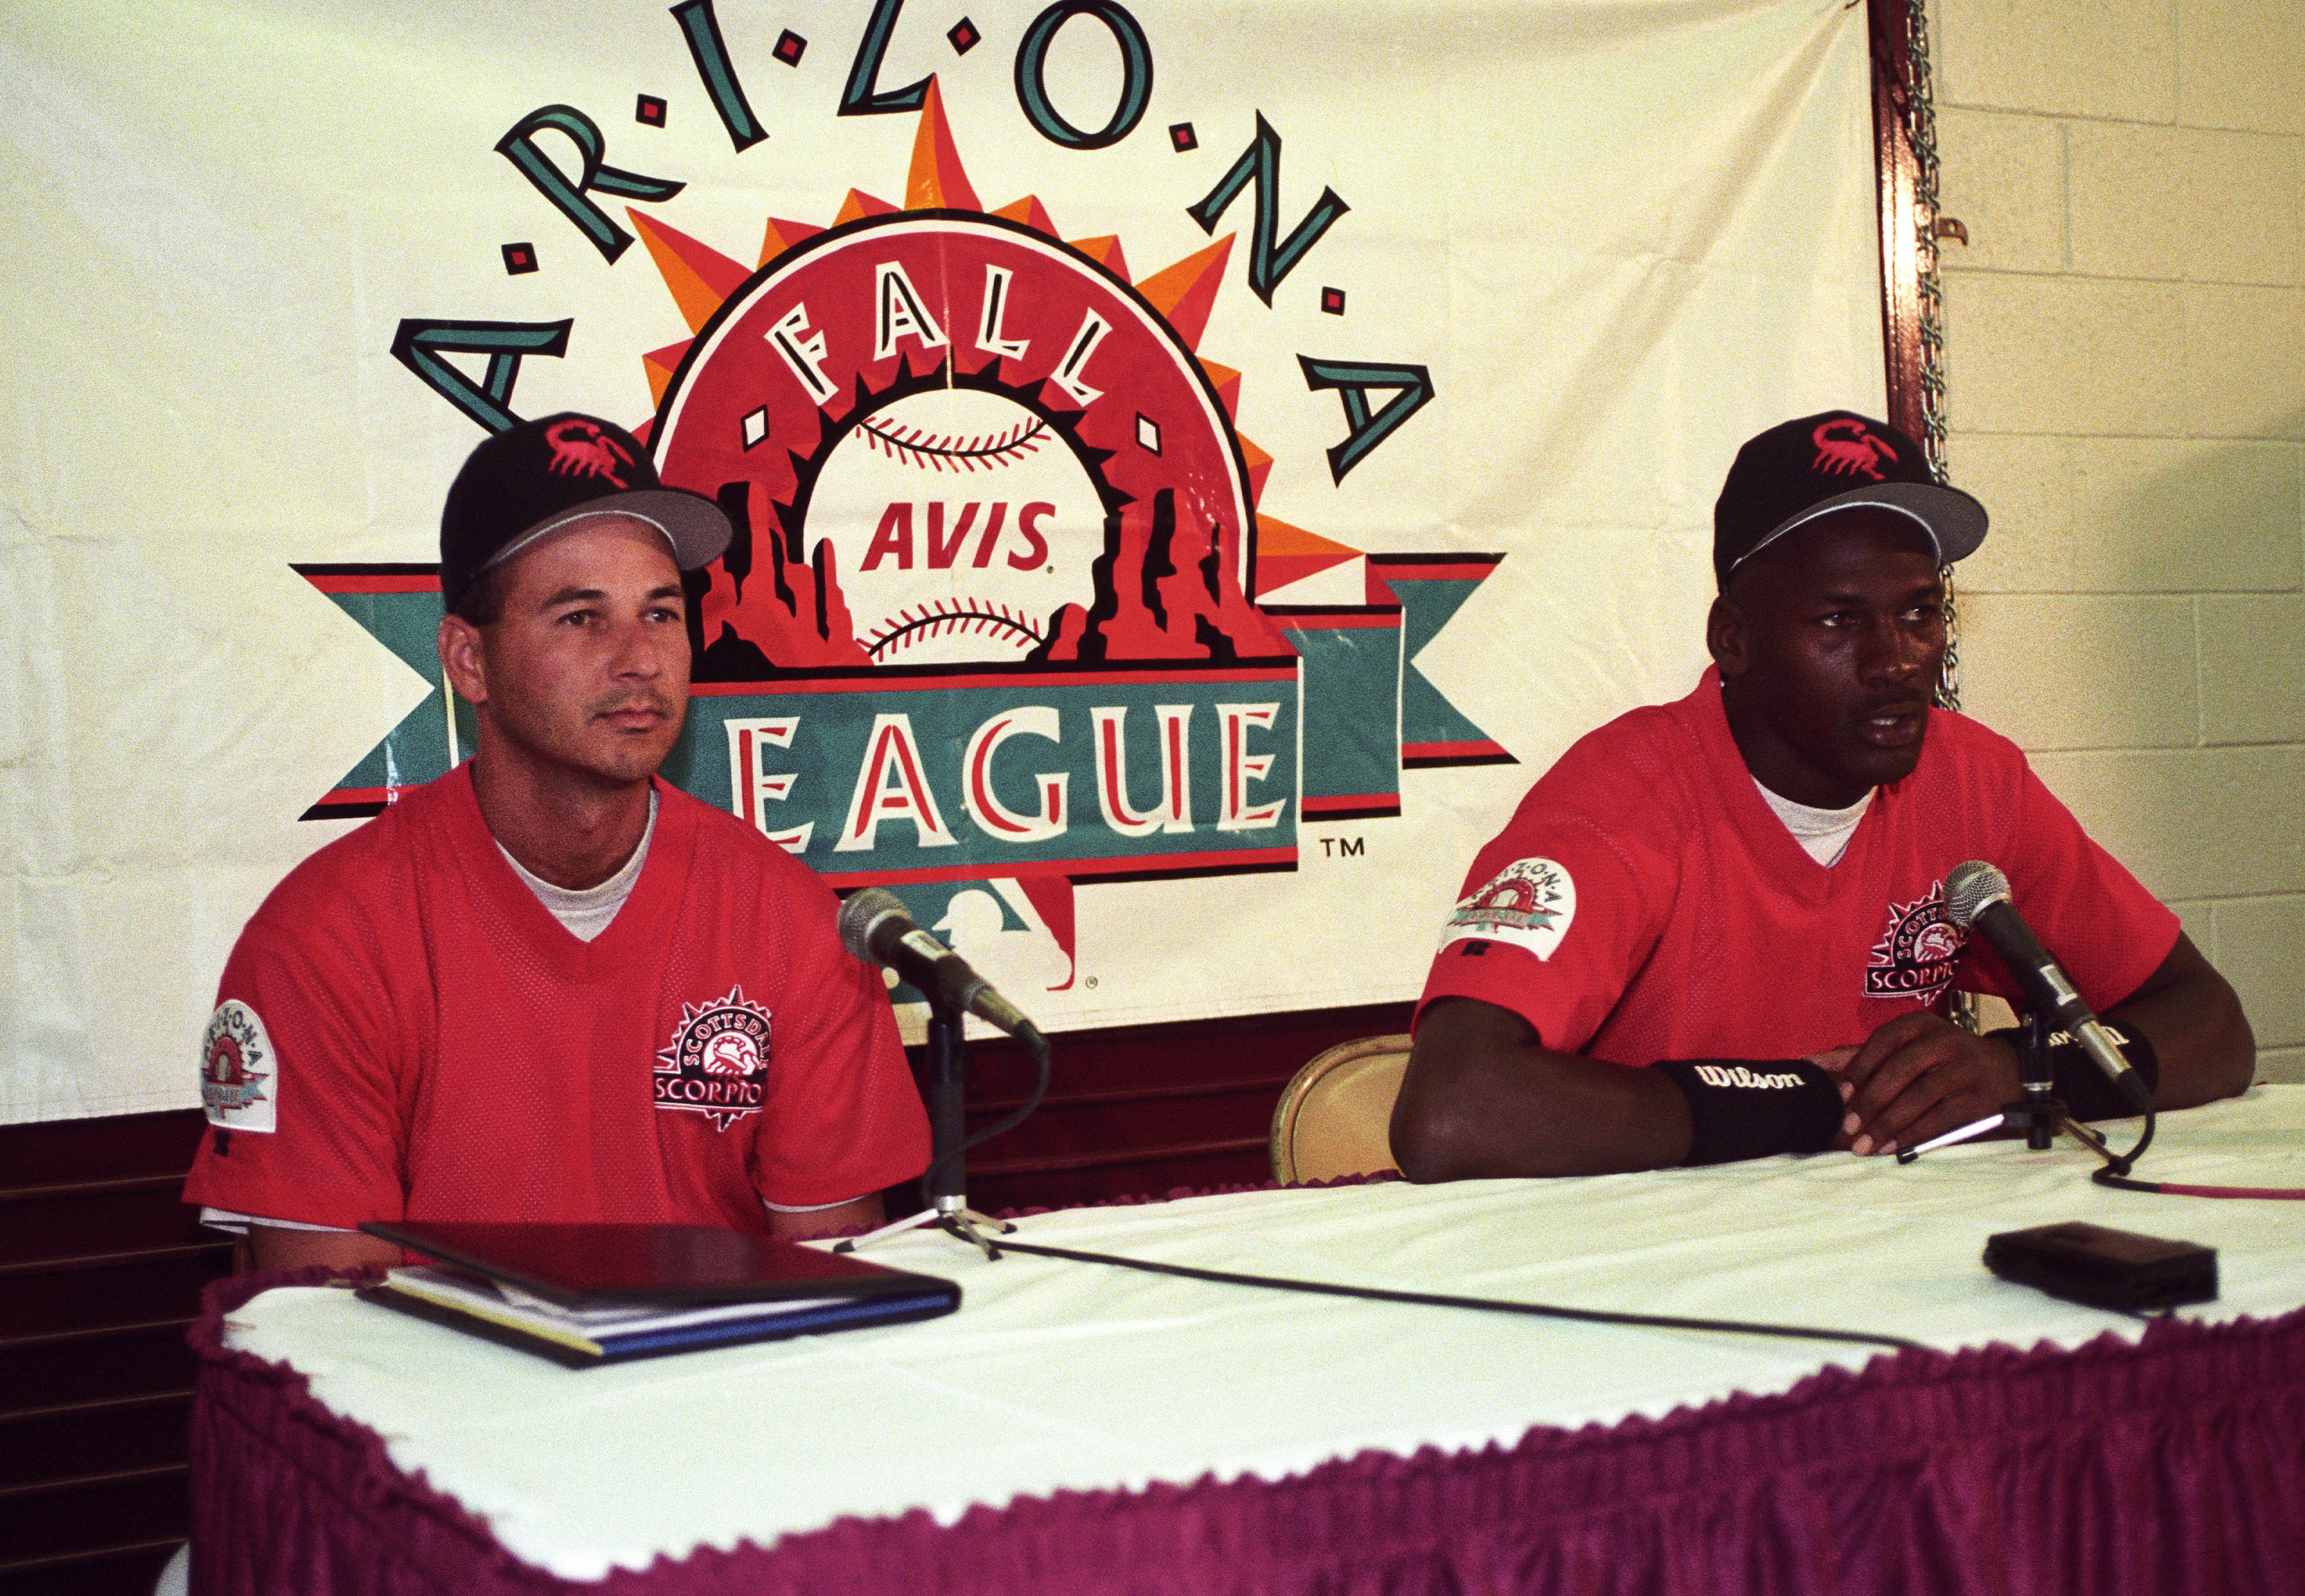 1994 Arizona Fall League